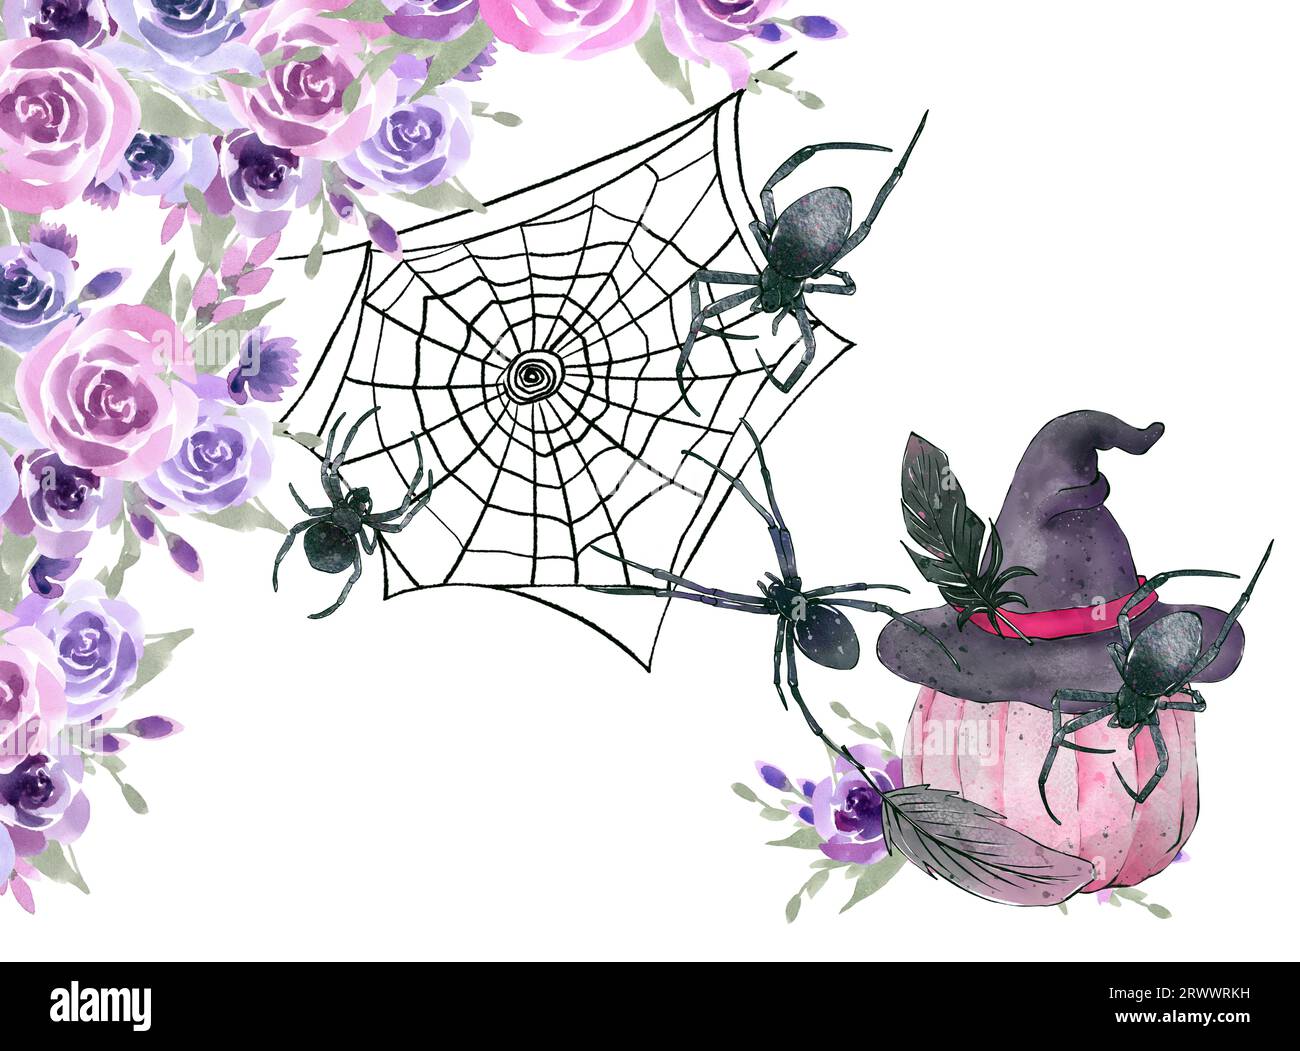 Modèle d'aquarelle Halloween, illustration vintage. Collection de Halloween noir et rose. Illustration dessinée à la main. Banque D'Images